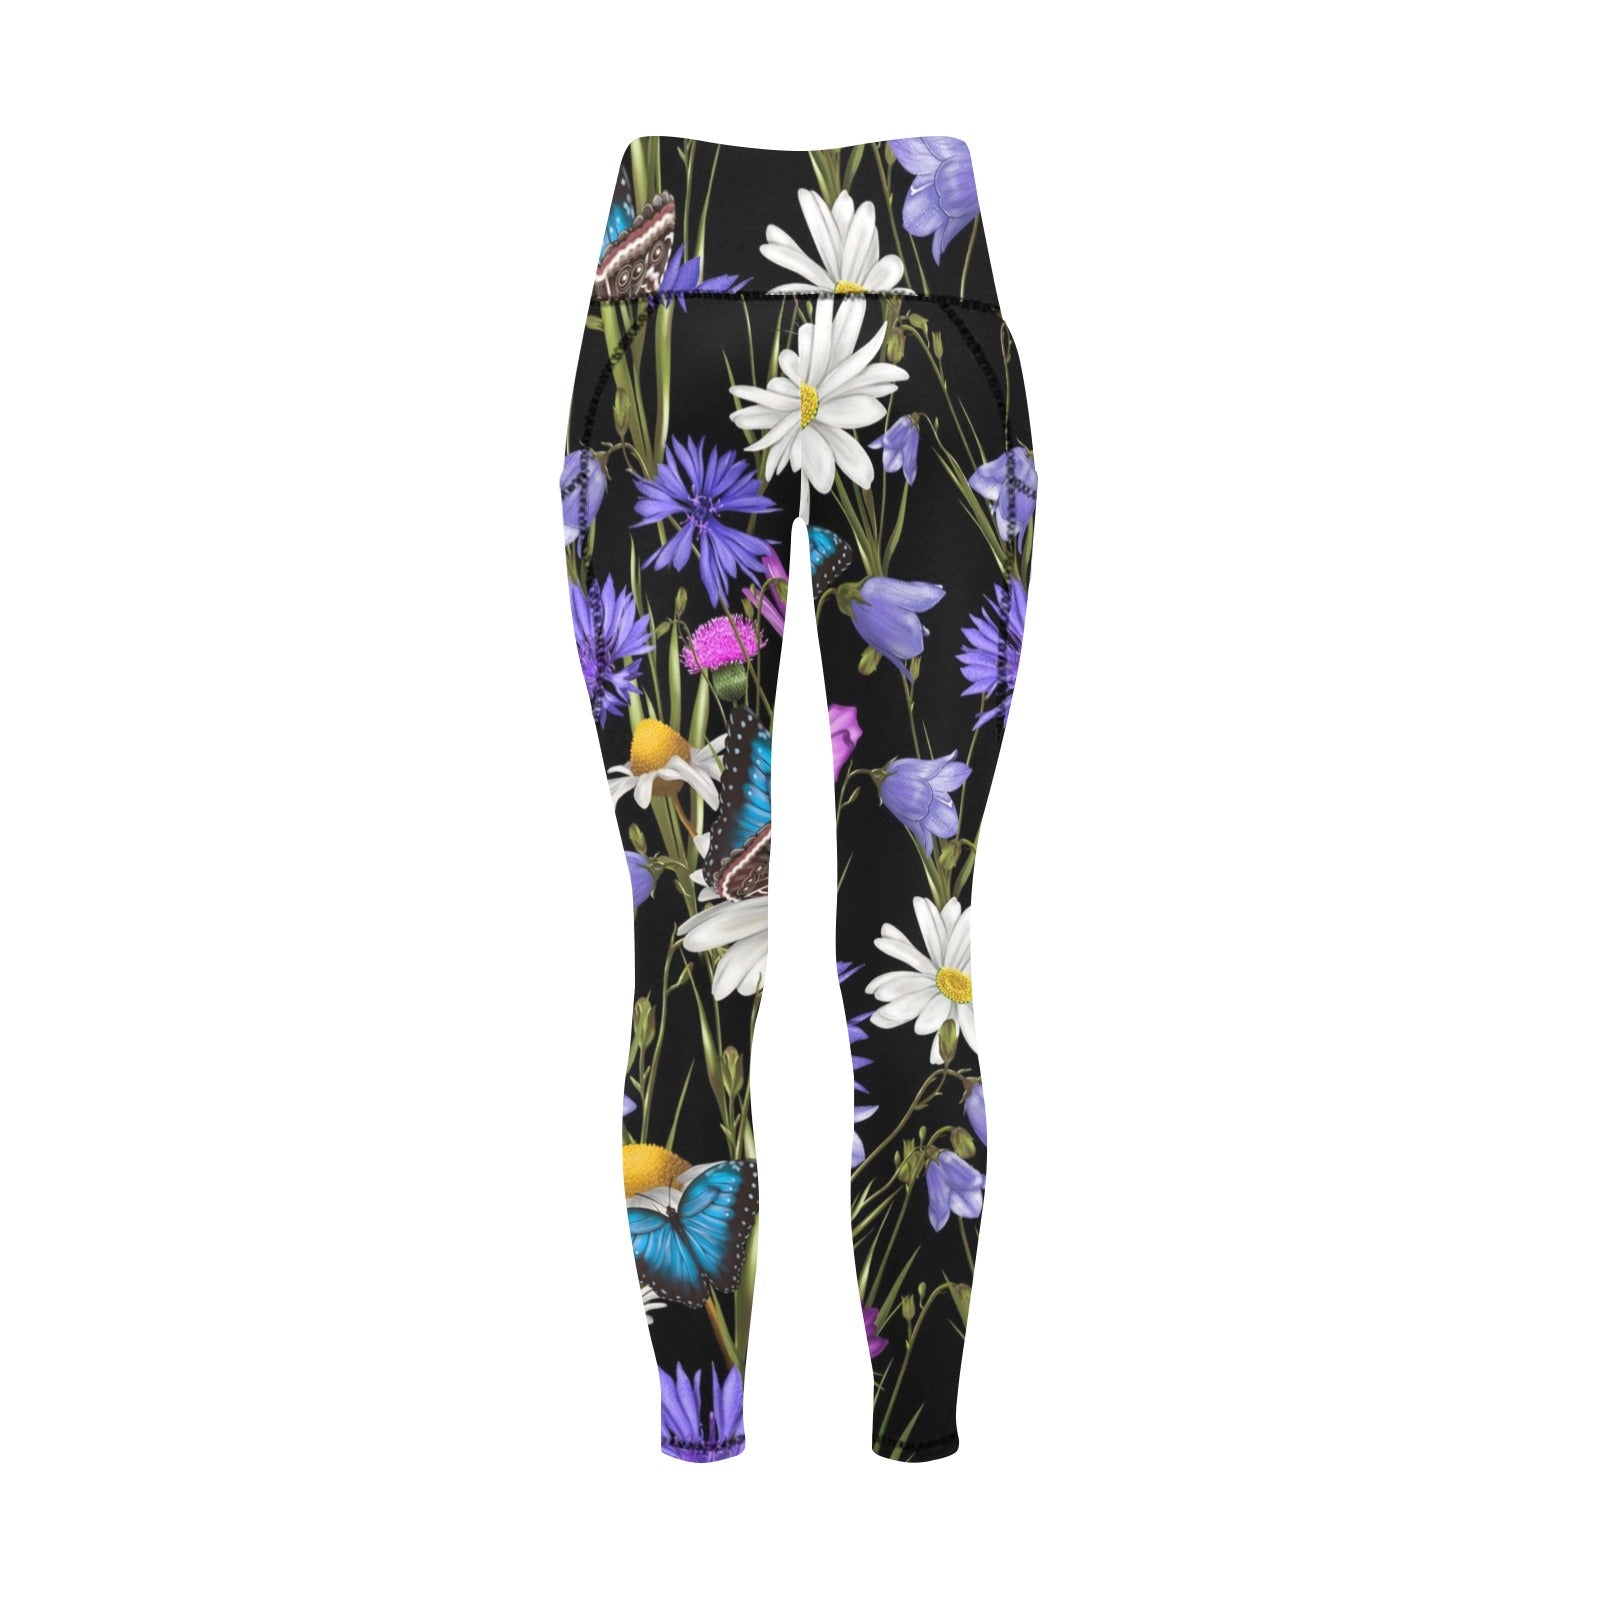 Butterfly Flowers - Women's Leggings with Pockets Women's Leggings with Pockets S - 2XL animal Plants